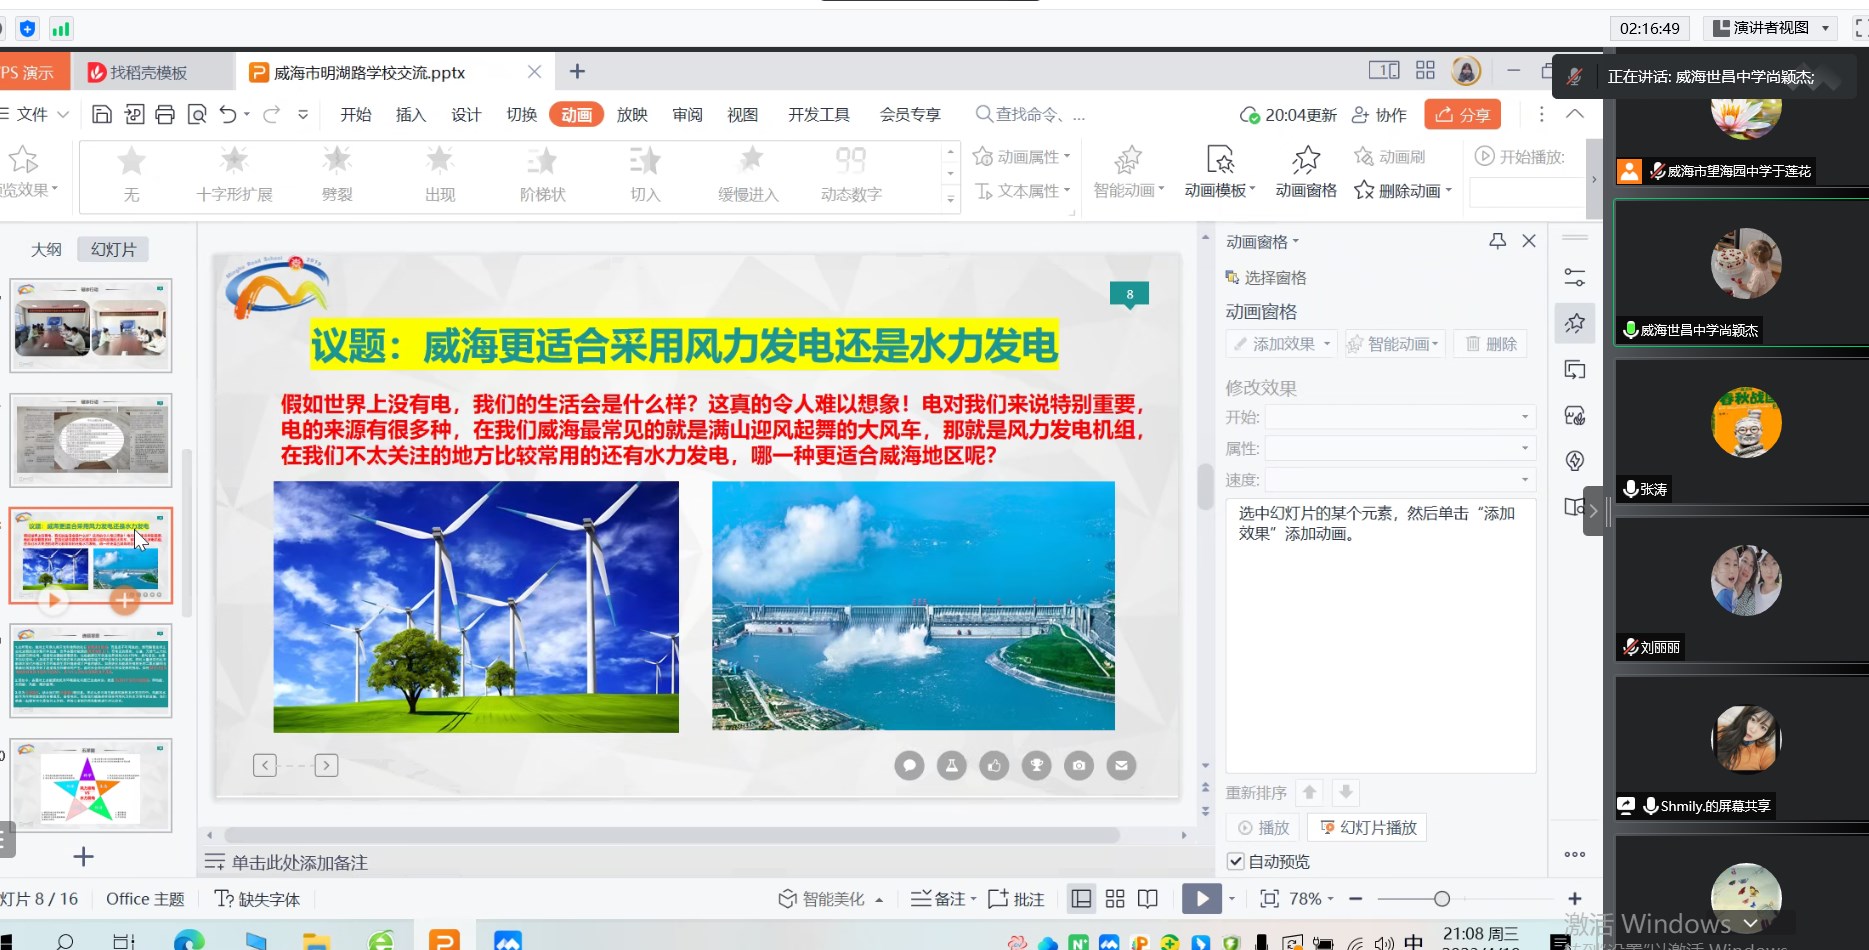 社会性科学议题学习项目威海区域实验校联盟召开线上交流研讨会</br>The SSI-L webinar was held by the Weihai Regional Experimental School Alliance插图2